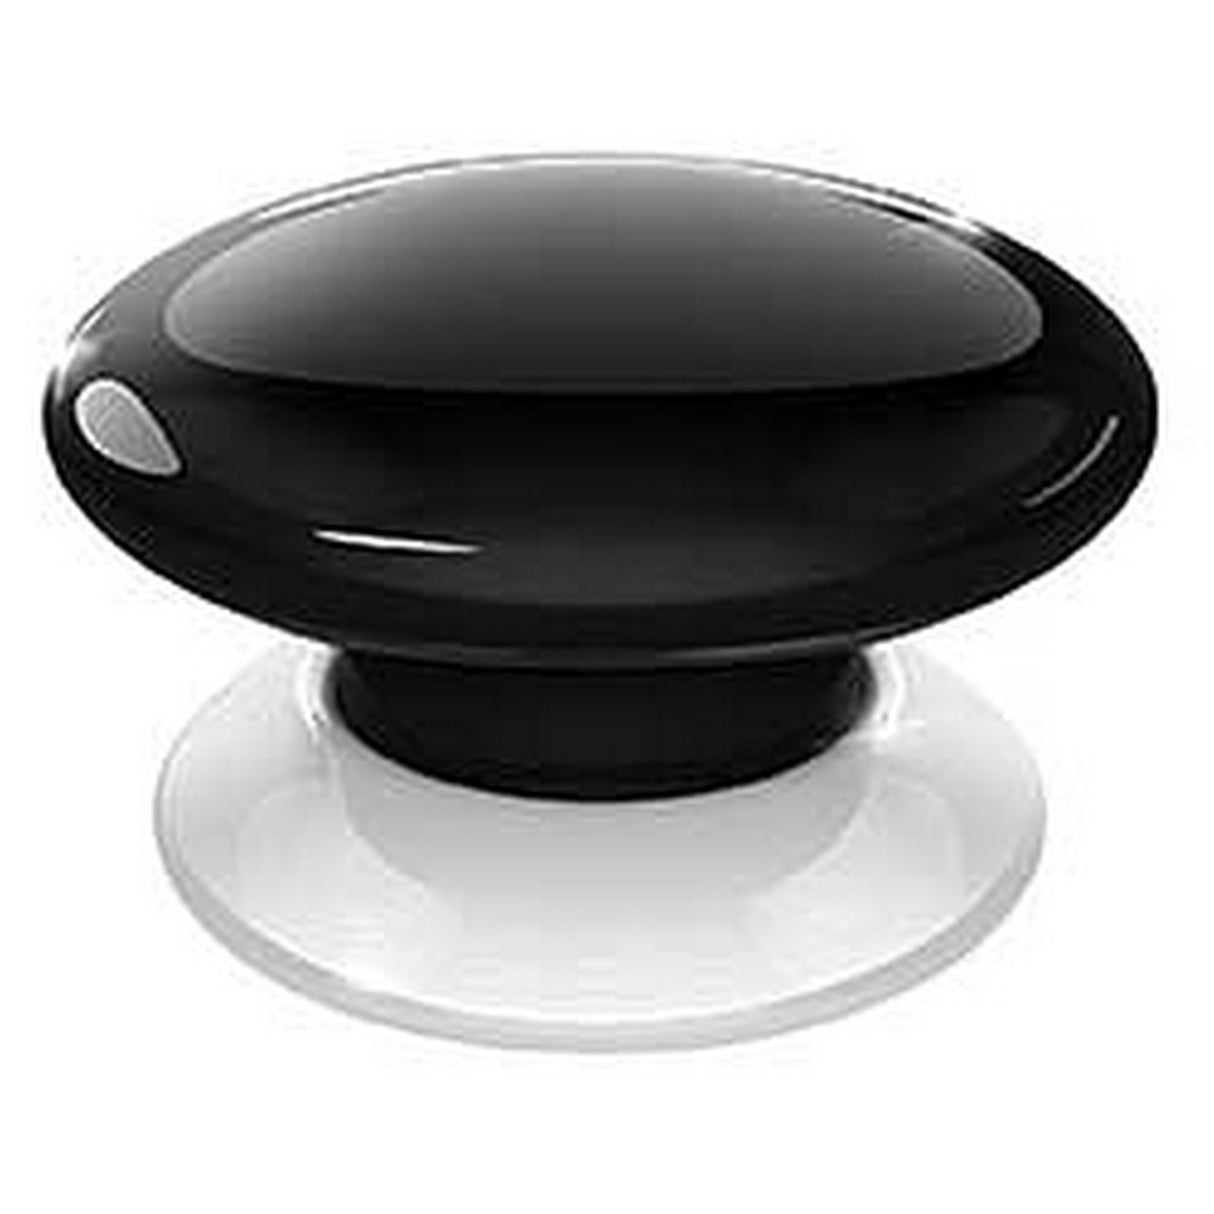 Fibaro The Button | Smart Home Control Device Black